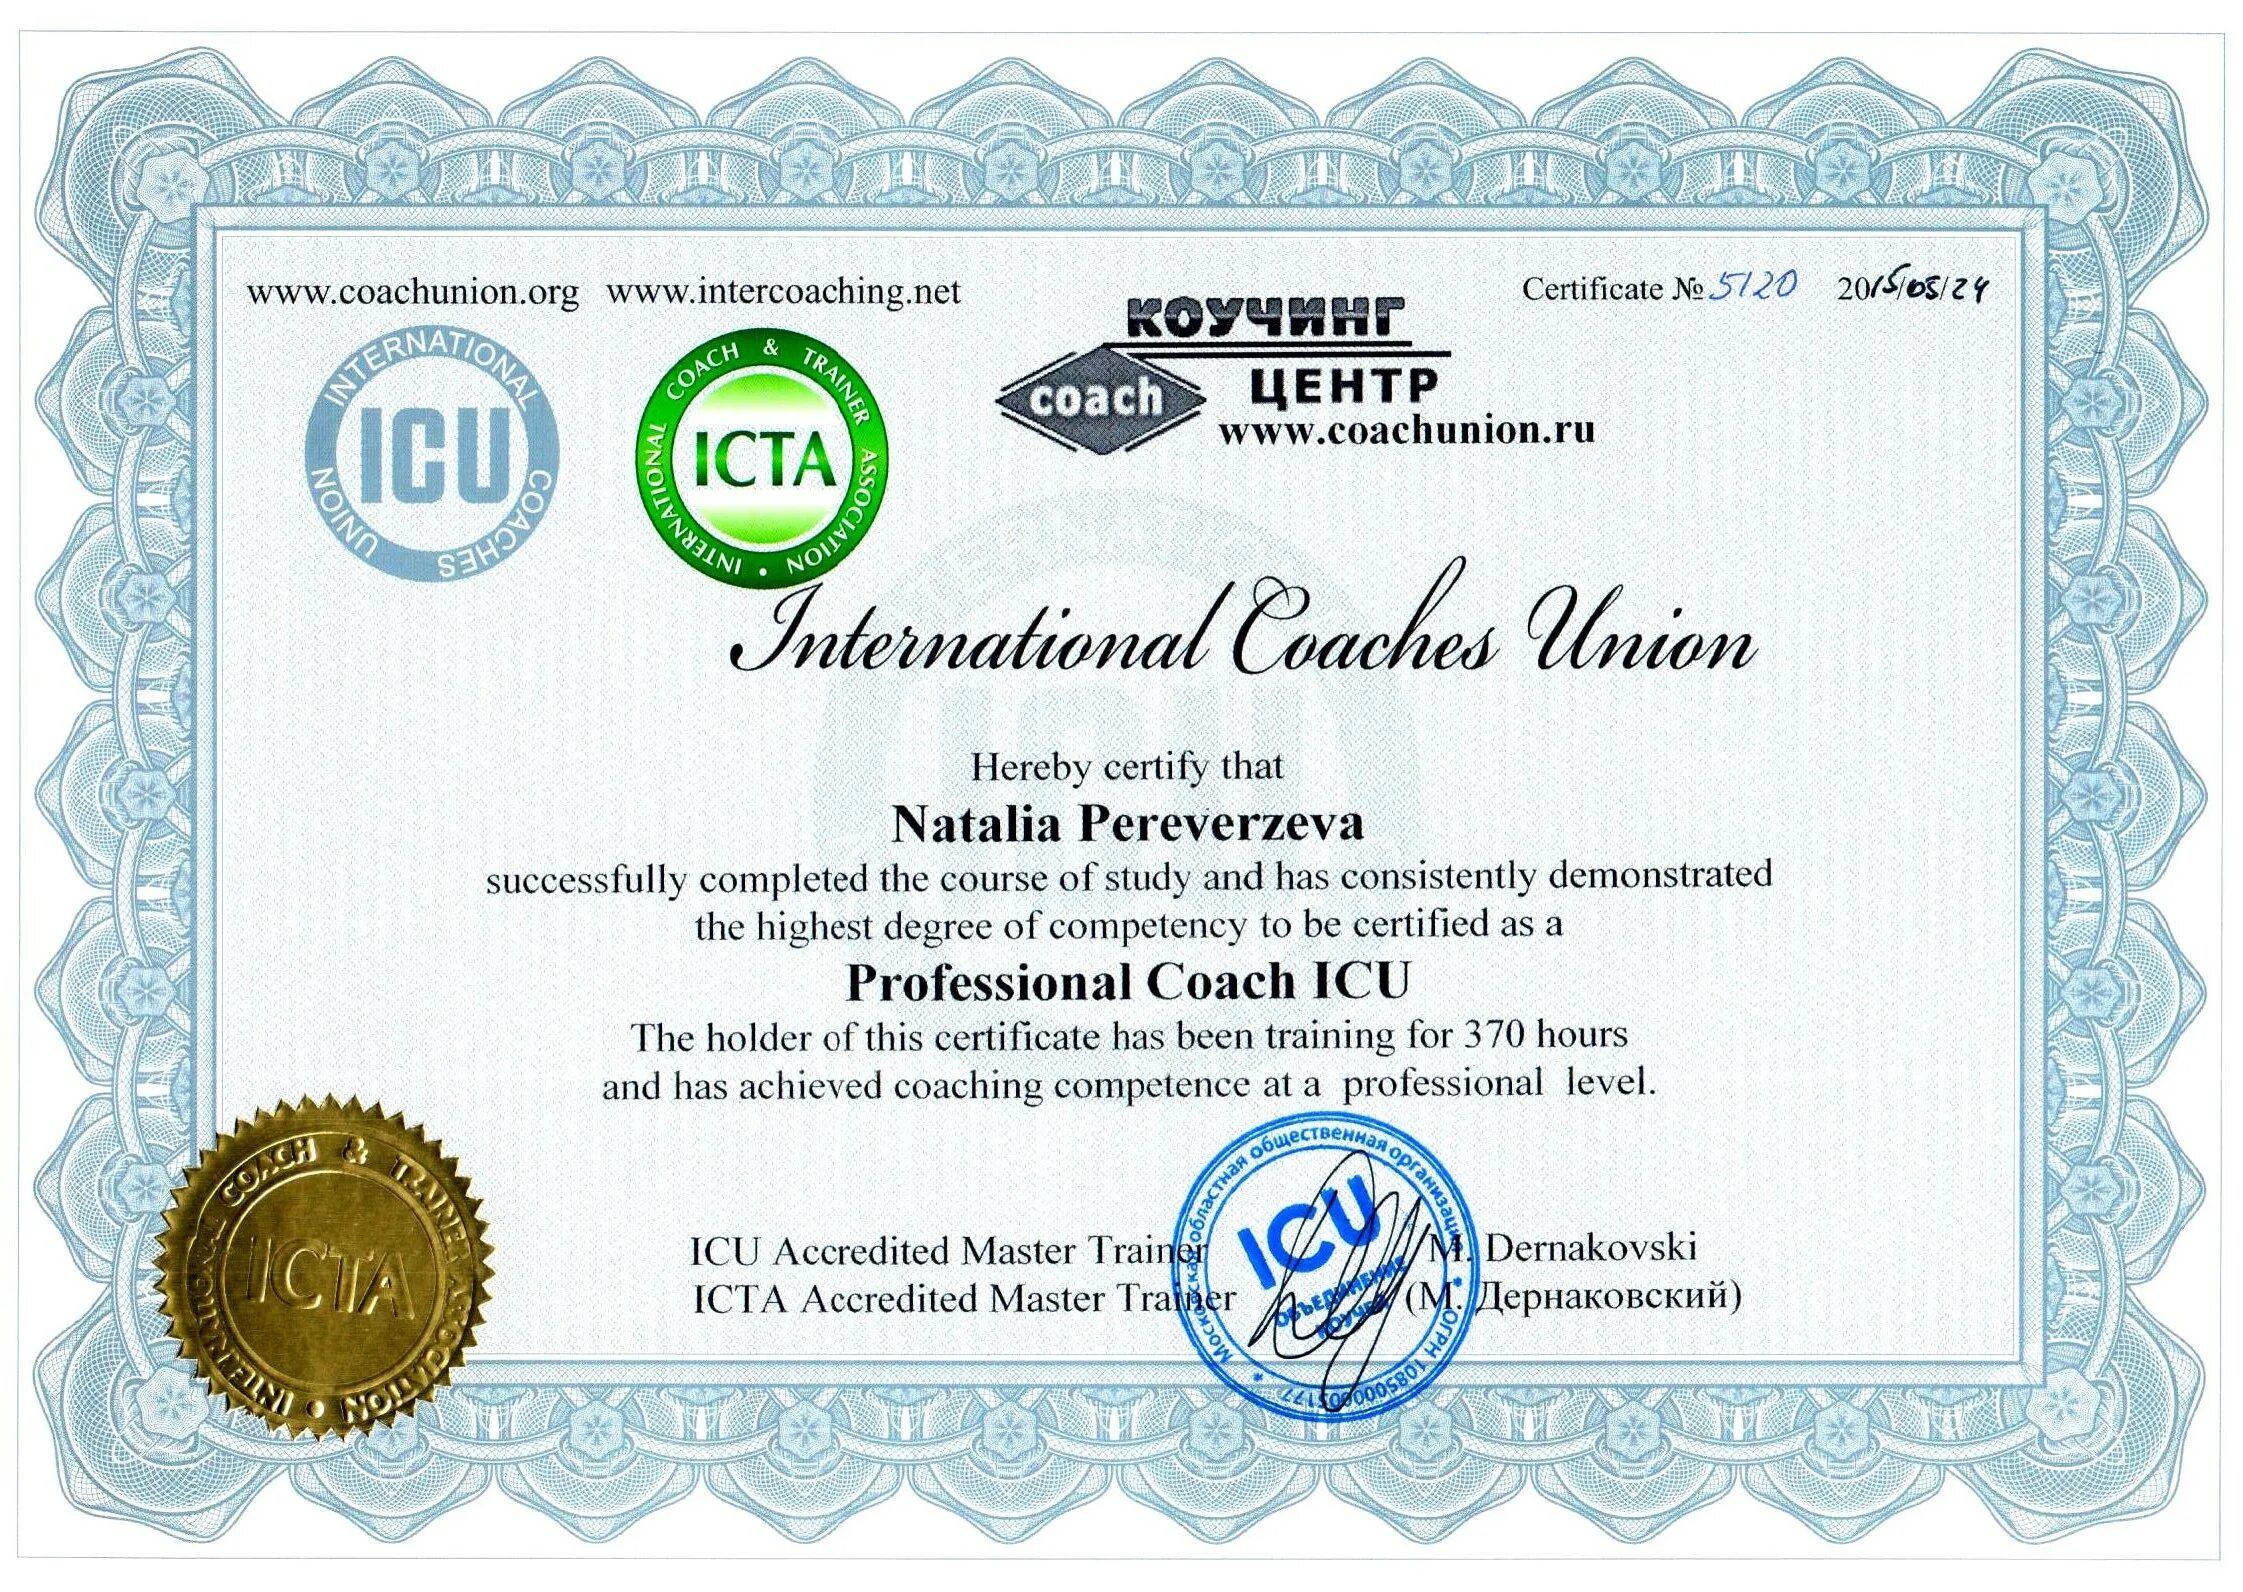 Certificate net. Сертификат коуча. Международный сертификат. Сертификат международного образца. Коучинг сертификат.